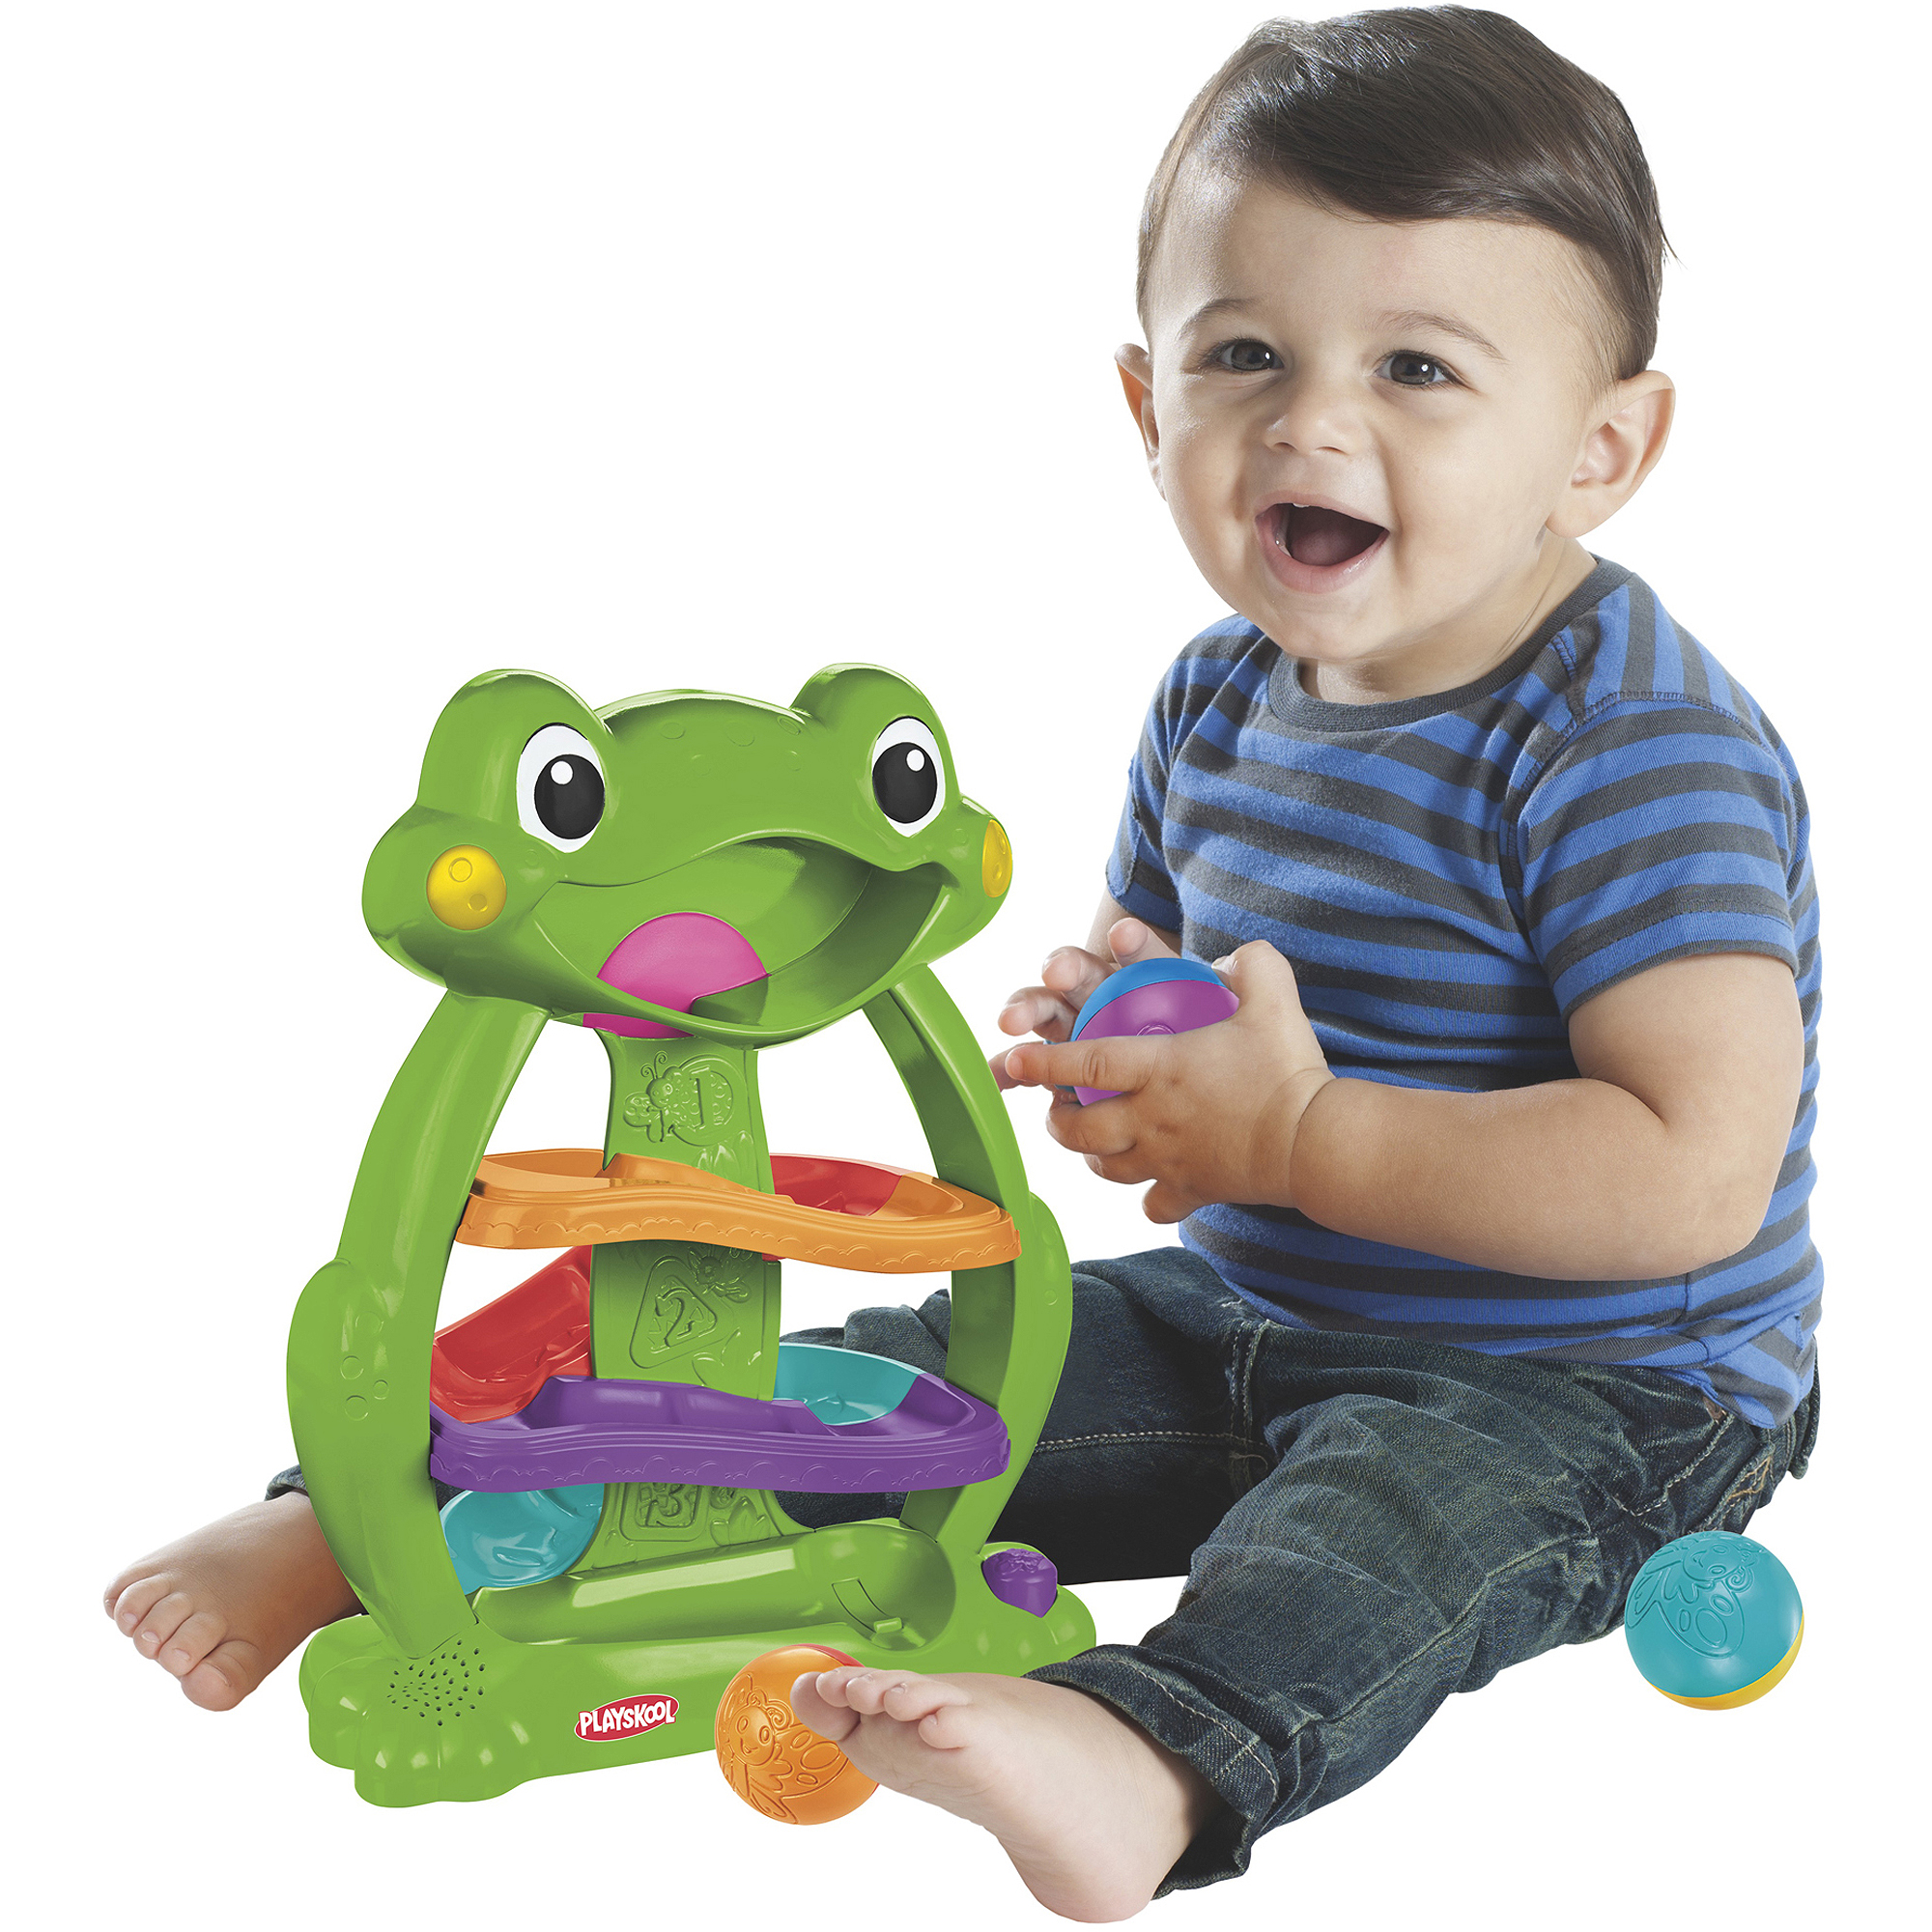 Playskool Tumble 'n Glow Froggio Toy - image 3 of 10